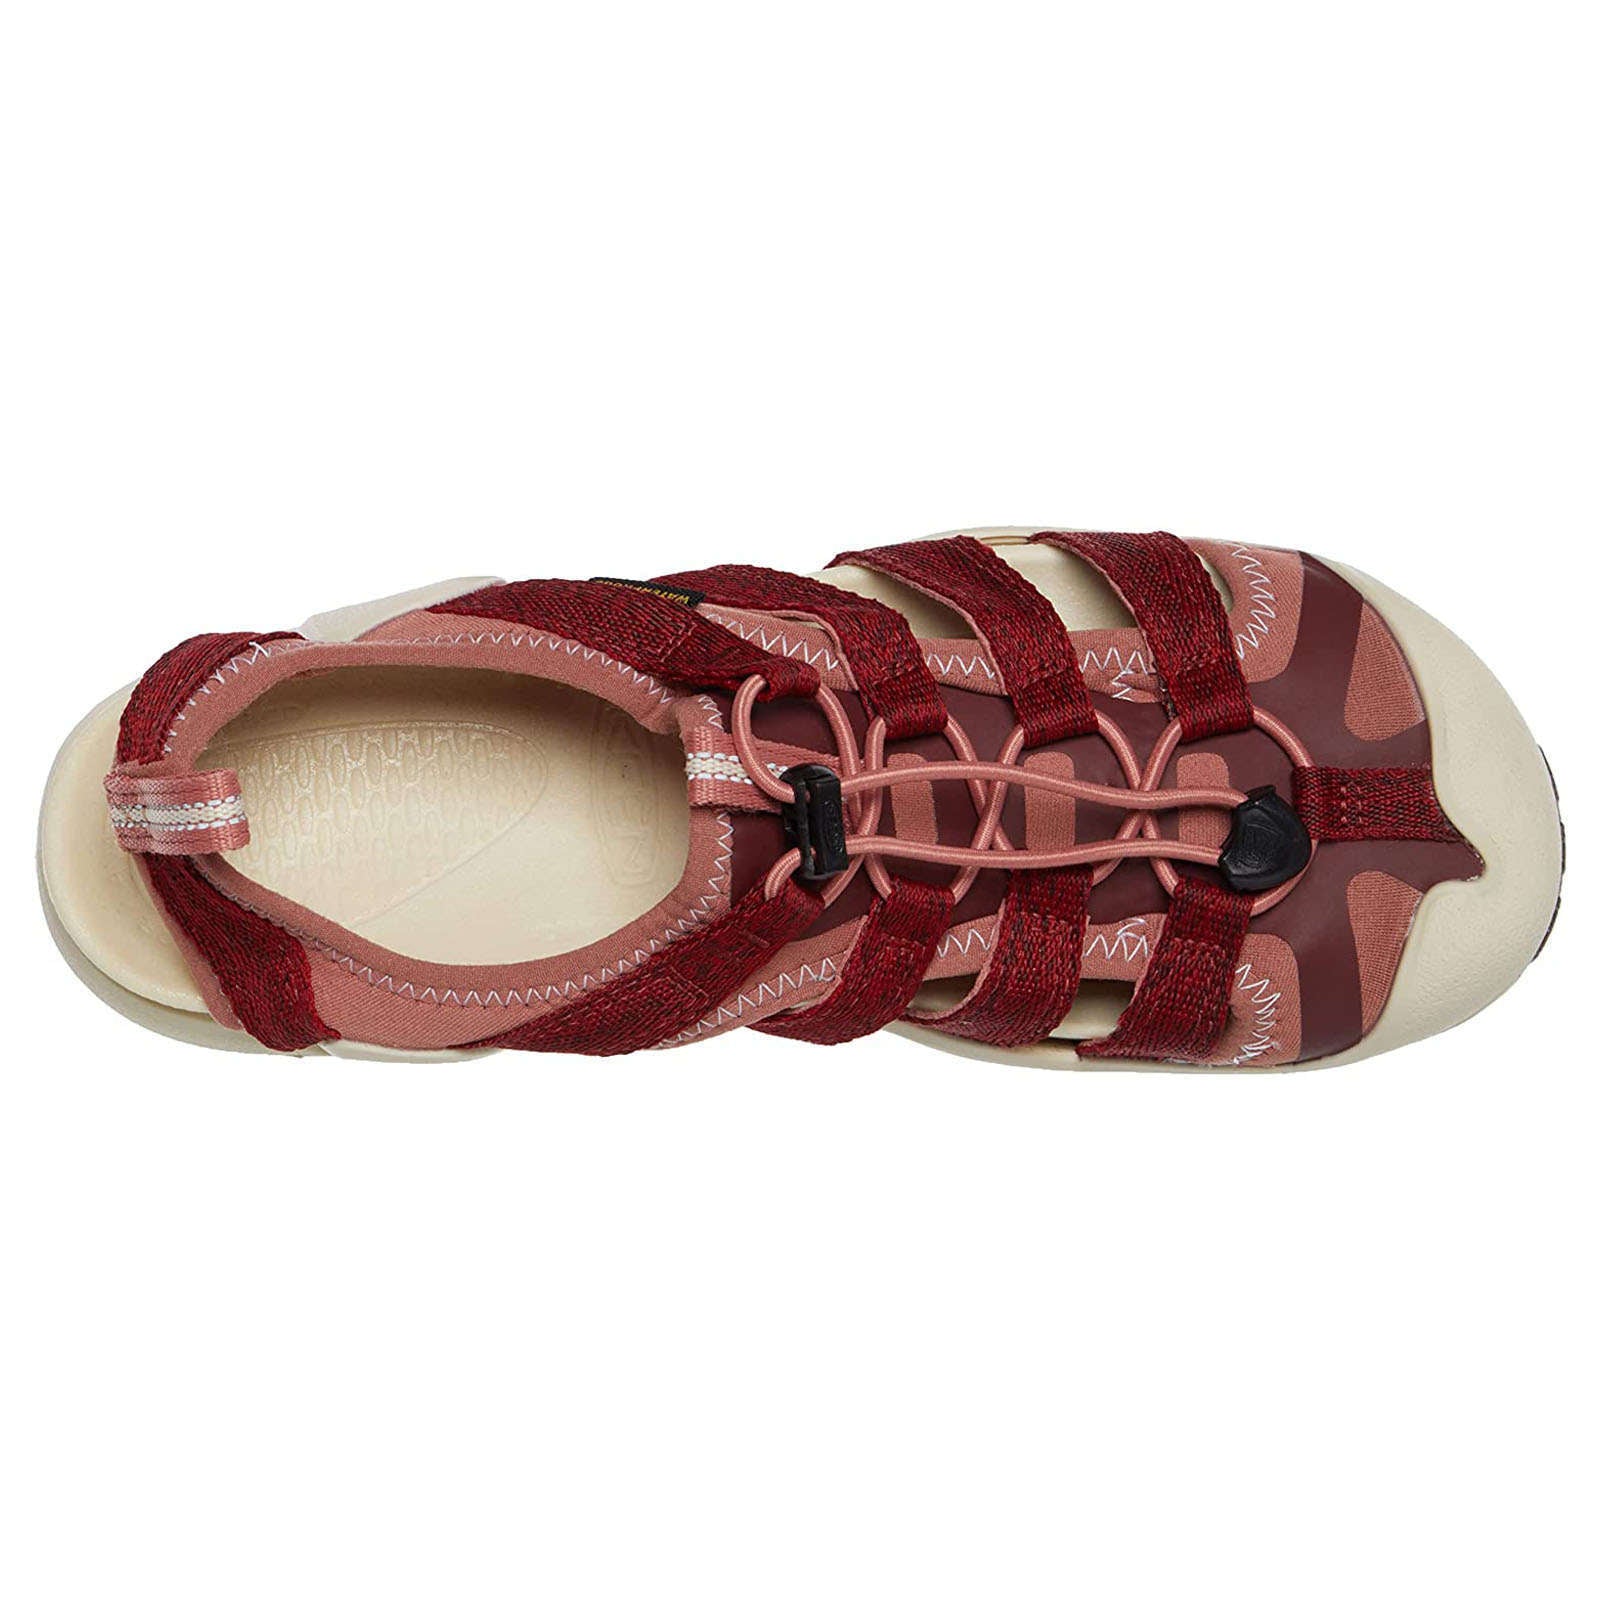 Keen Clearwater II CNX Women's Waterproof Sandals#color_red dahlia andorra